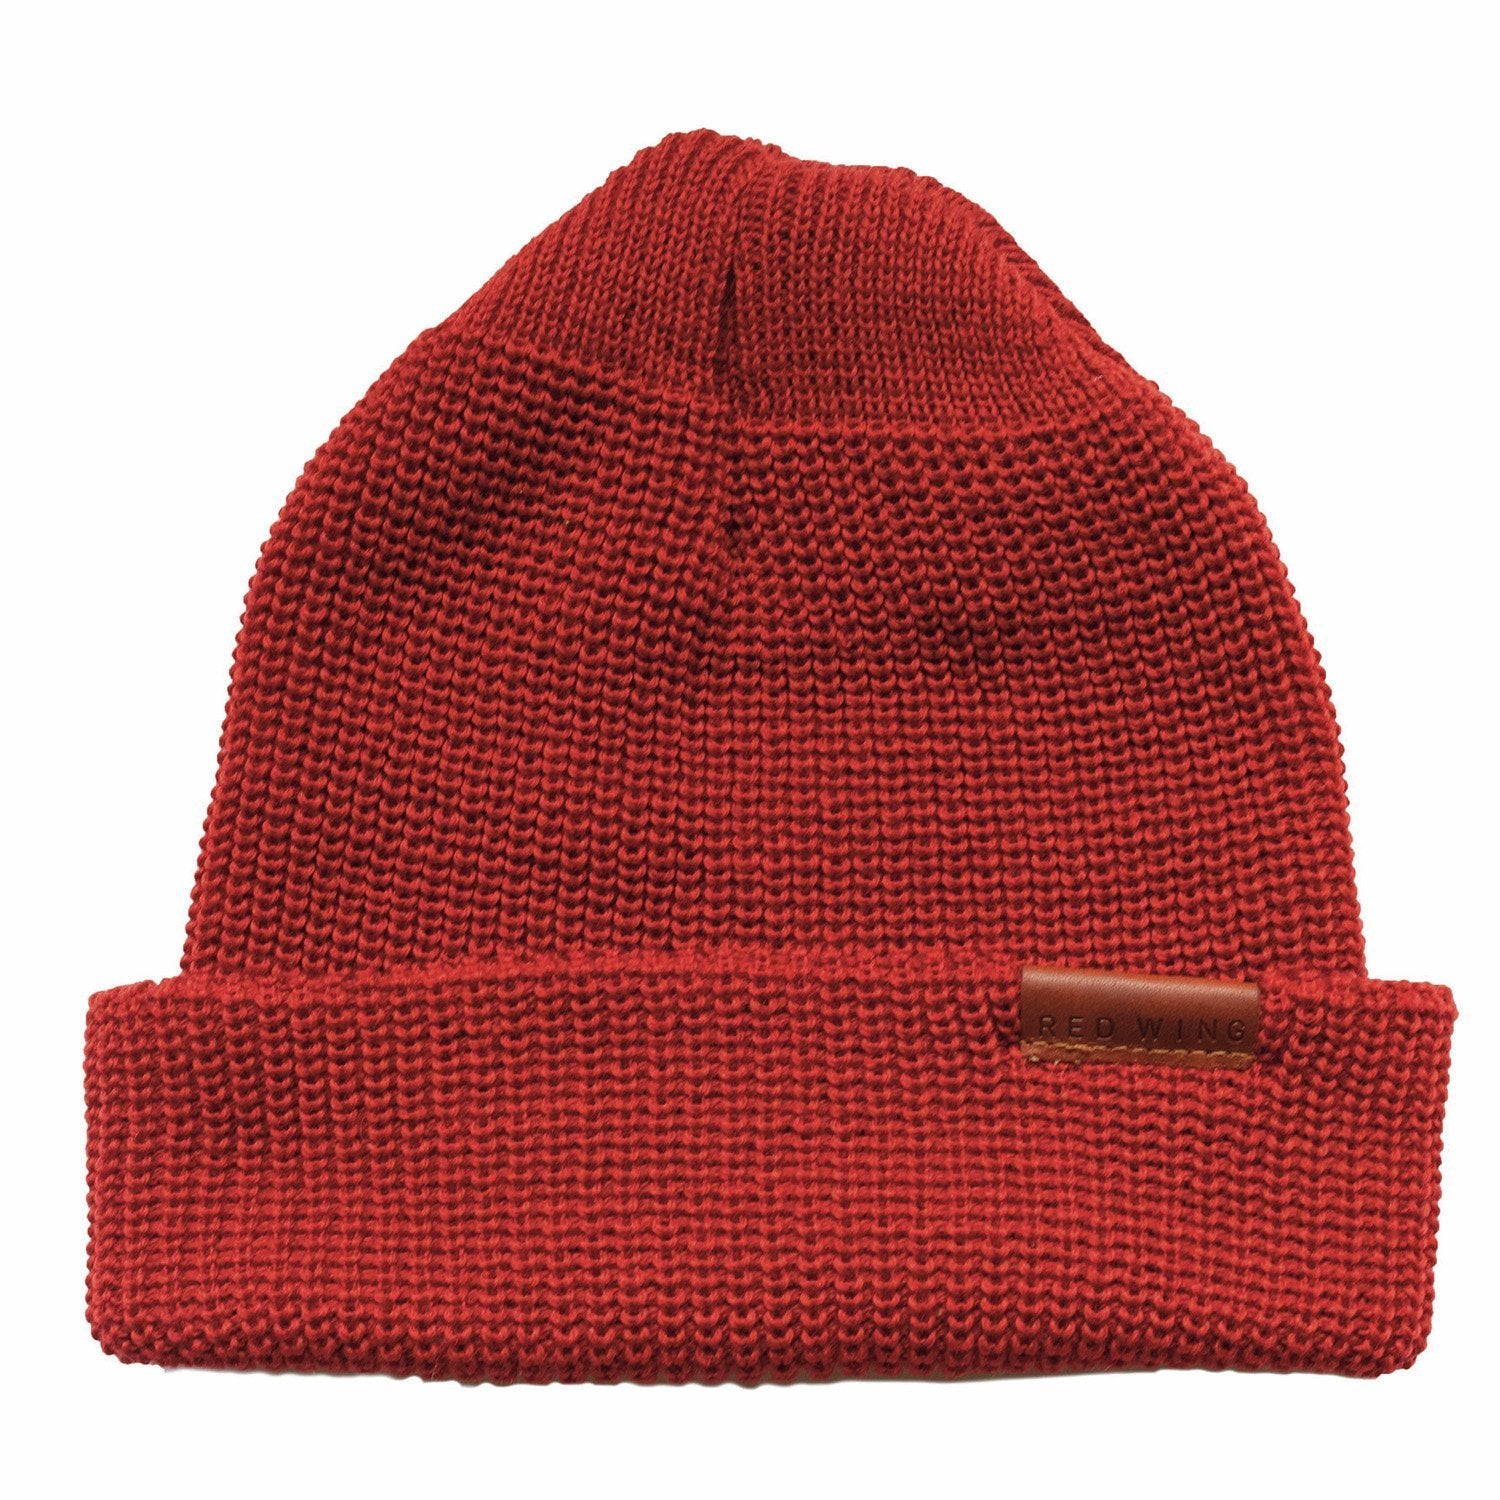 Merino Wool Knit Cap 97493 Red - grown&sewn